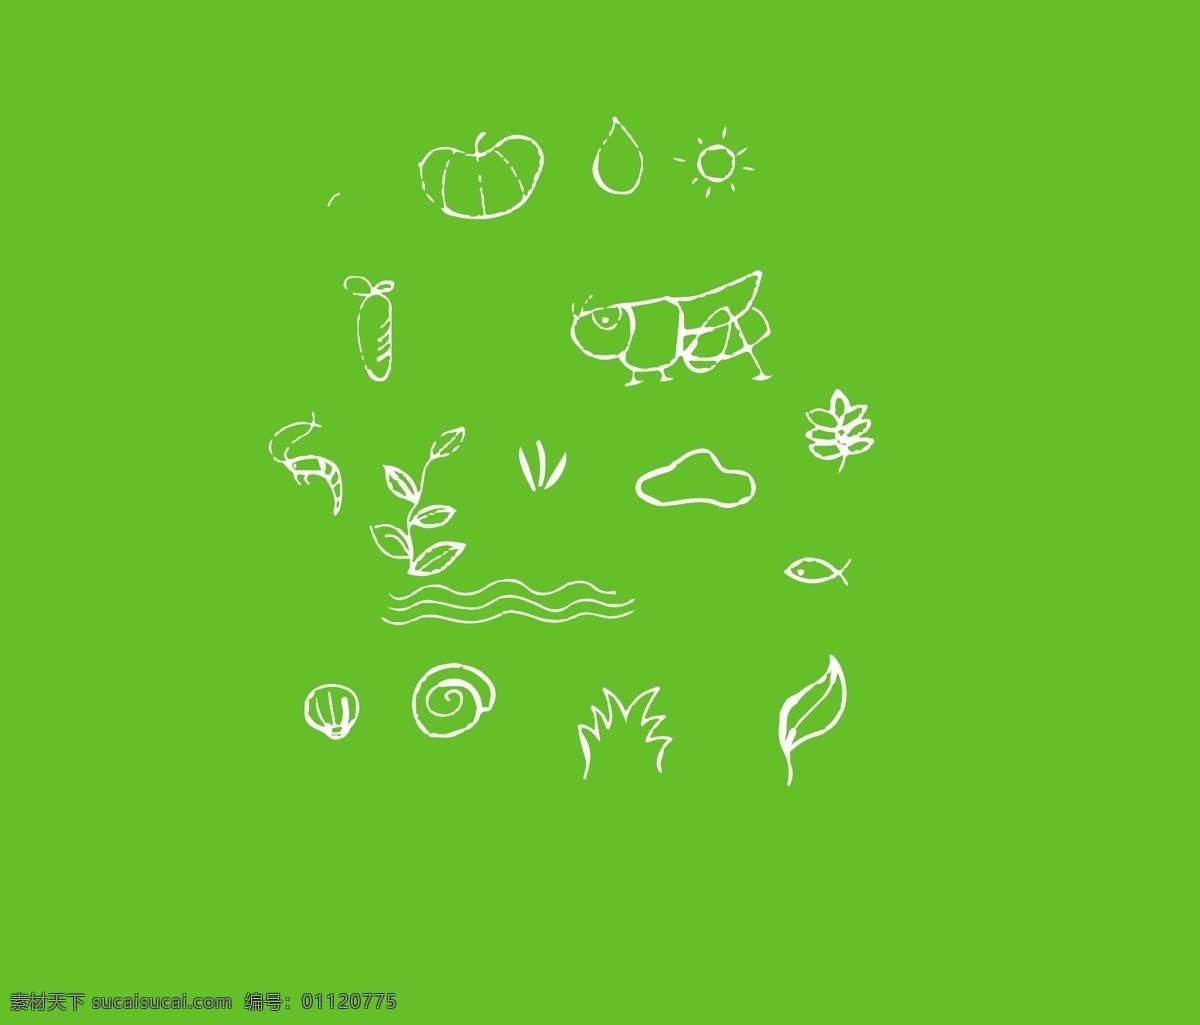 原生态 插画 元素 生态插画元素 插画元素 自然 绿色 环保 天然 淳朴 包装元素 设计图标 虾米 水草 太阳 绿叶 标志图标 其他图标